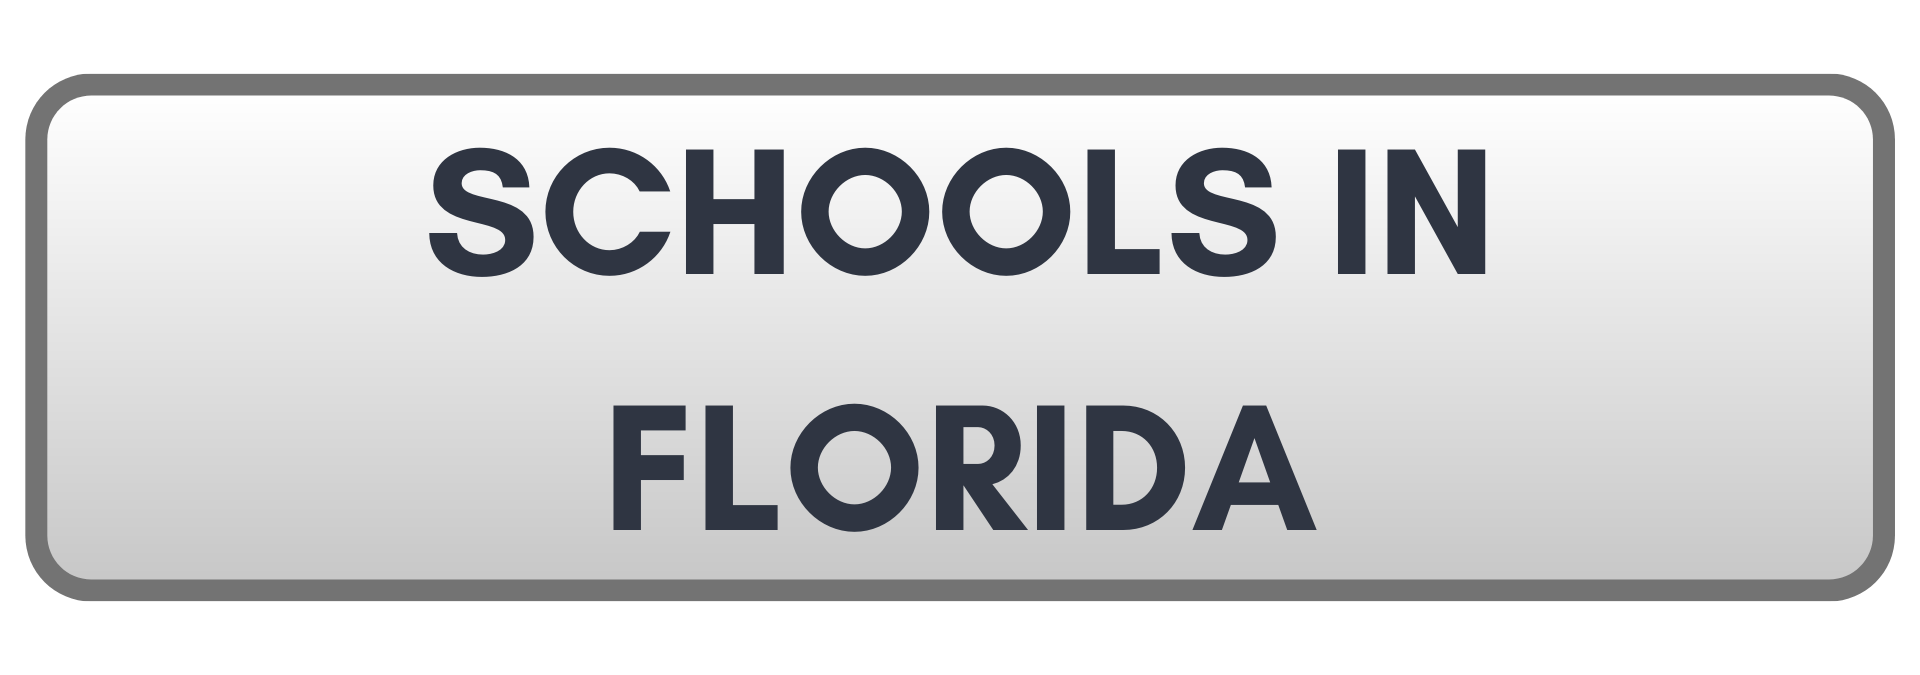 Schools in Florida